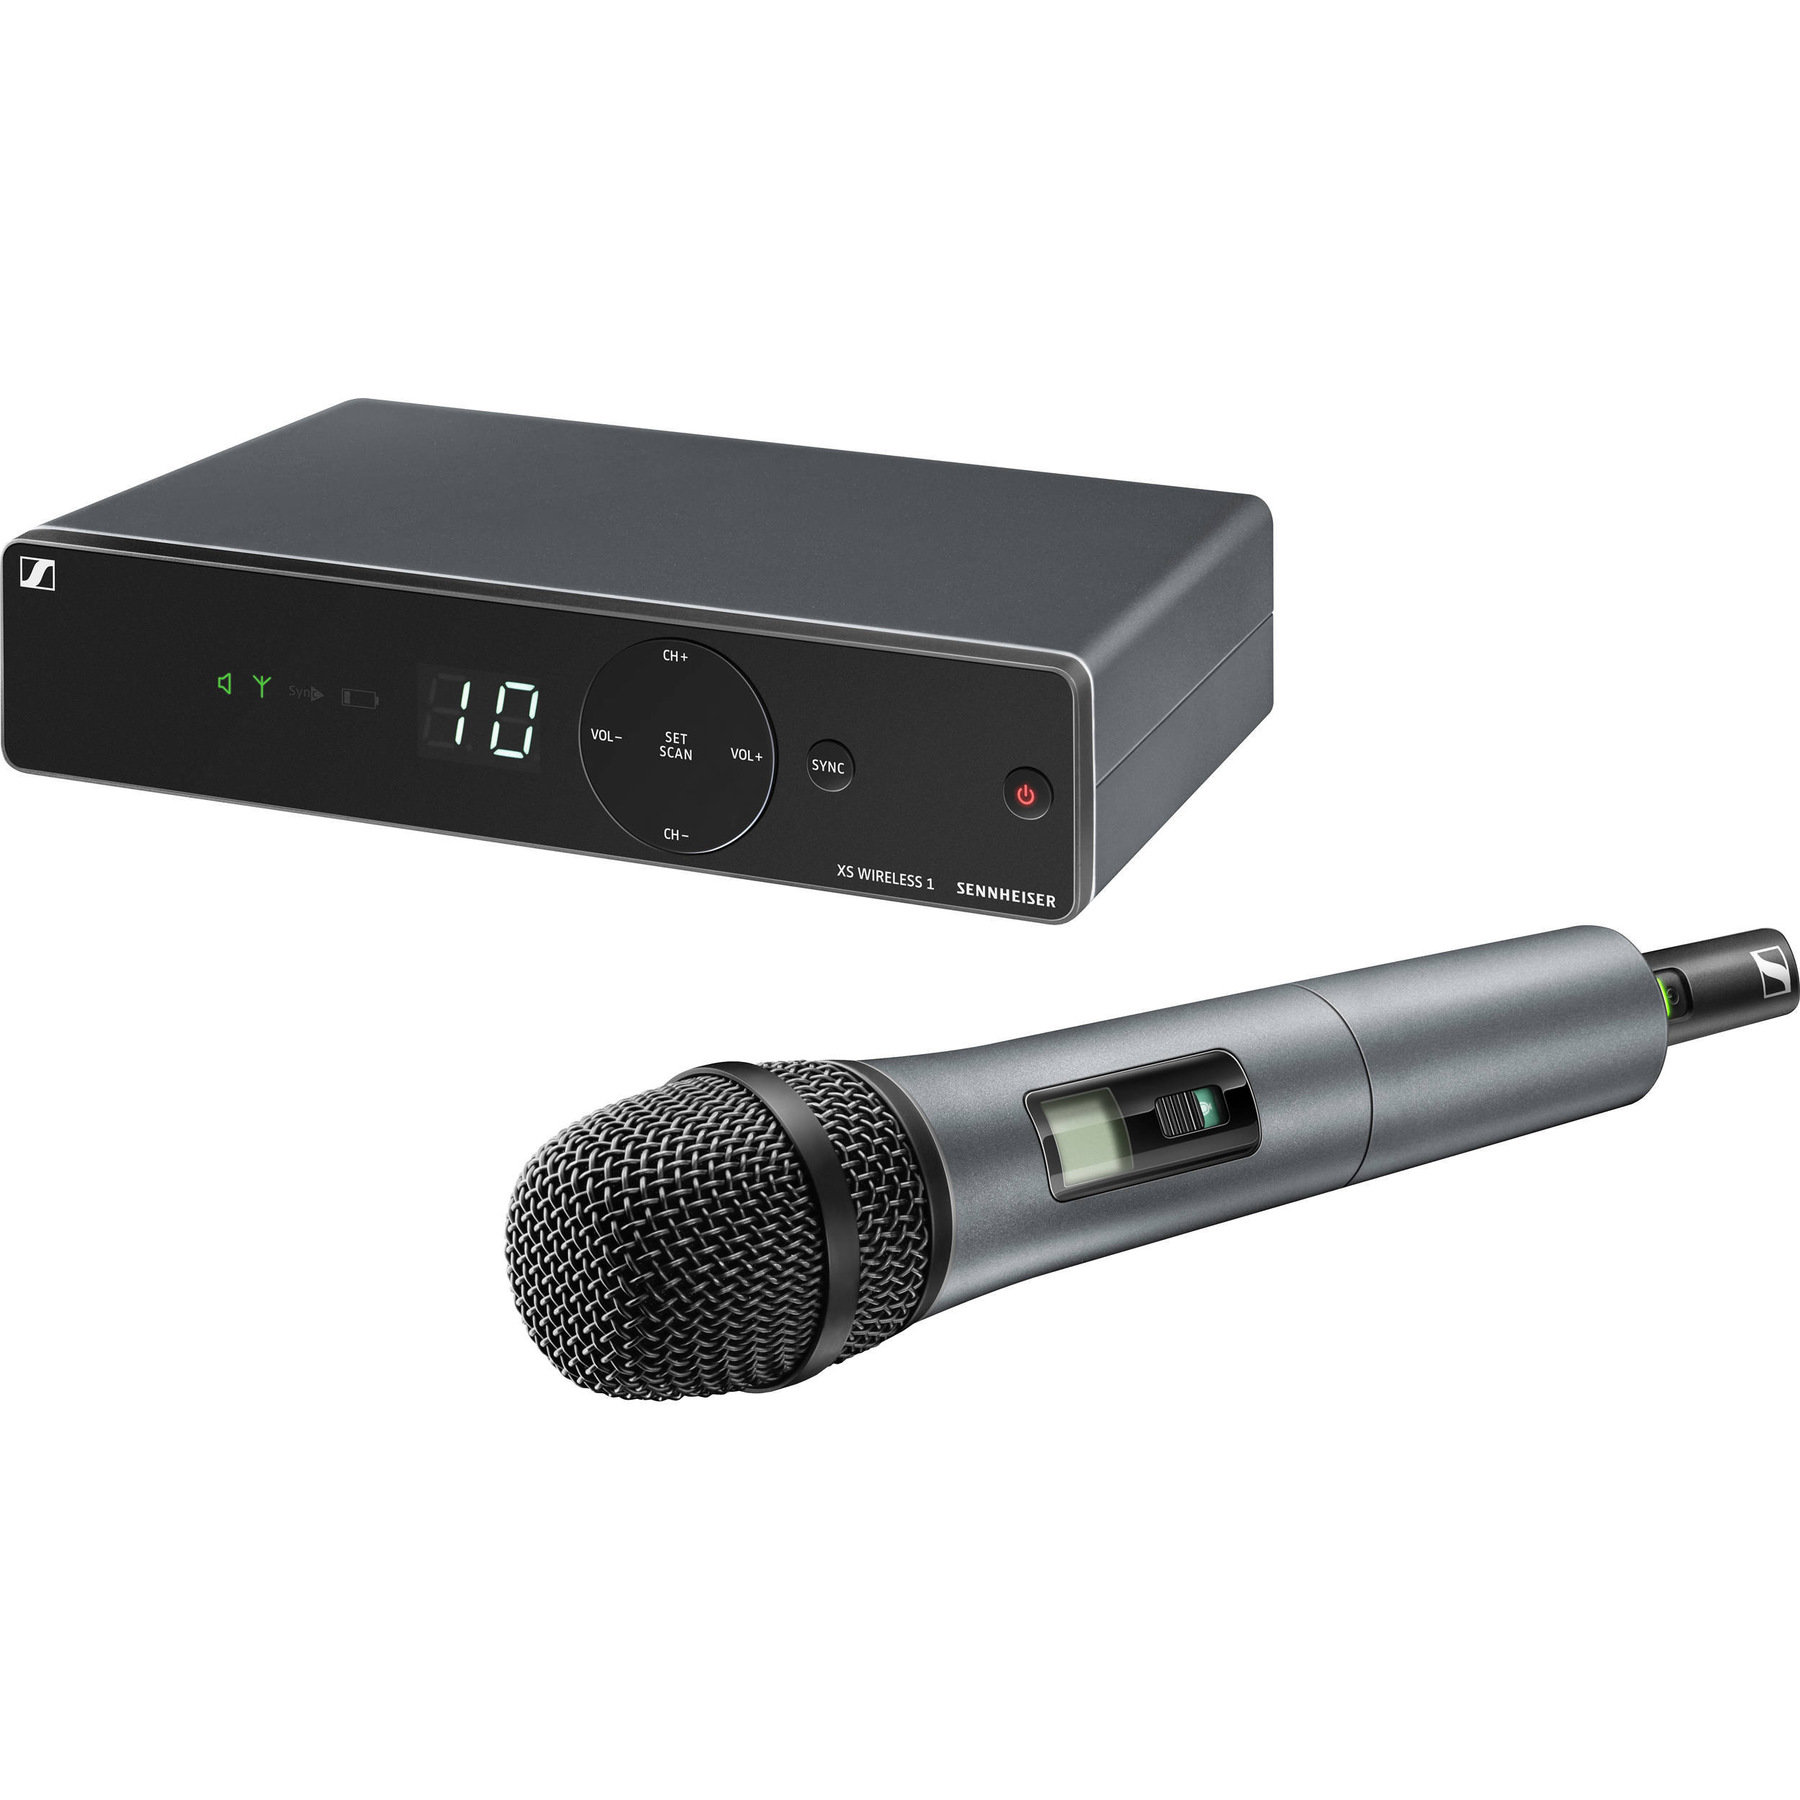 Sennheiser XSW 1-825-A вокальная радиосистема с динамическим микрофоном E825 (548-572 MHz)